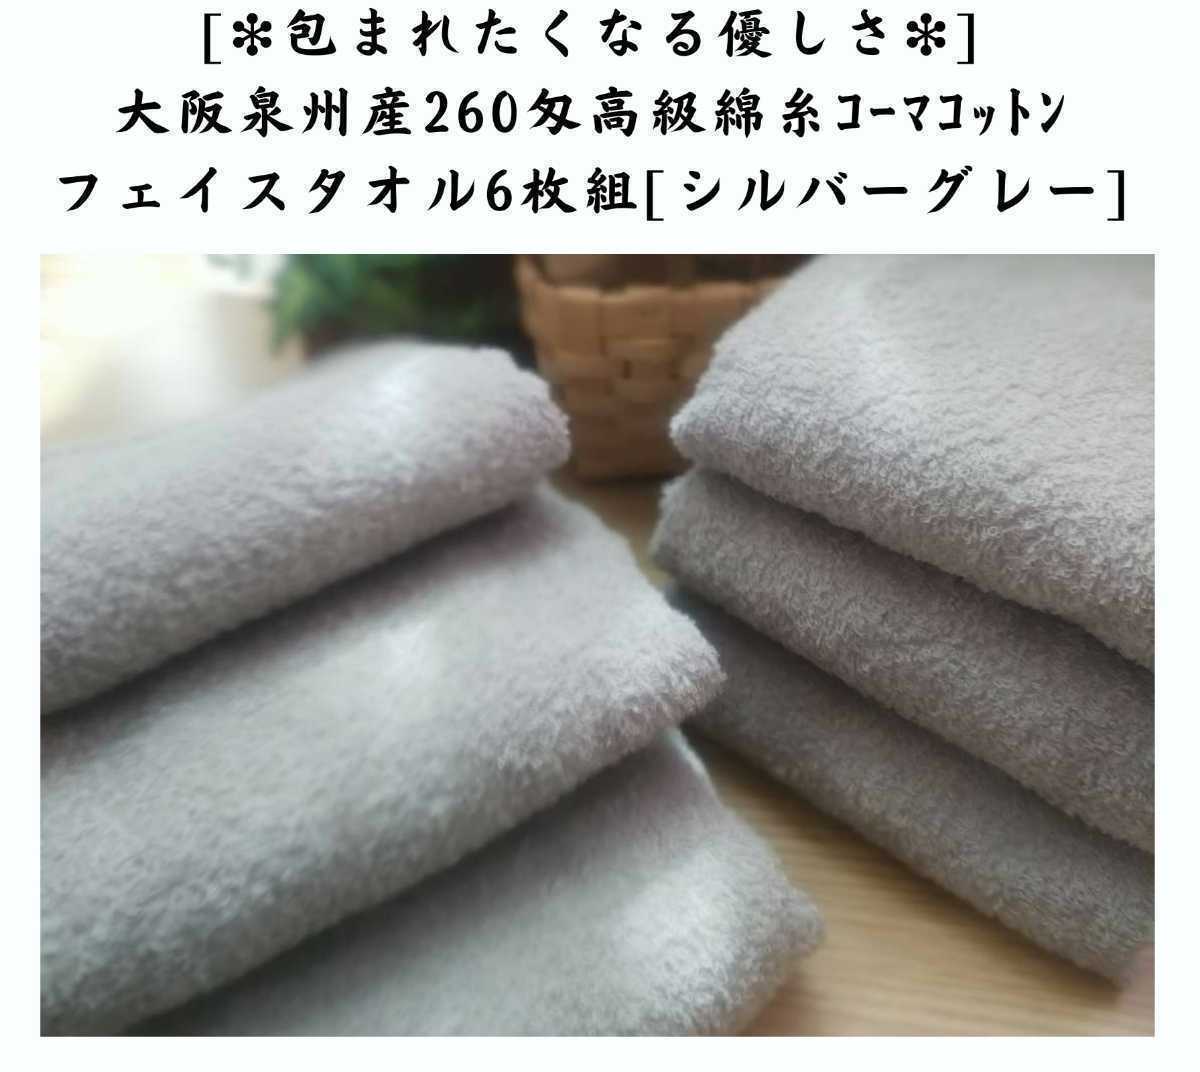 泉州タオル 高級綿糸ジャングルグリーンフェイスタオルセット6枚組 タオル新品